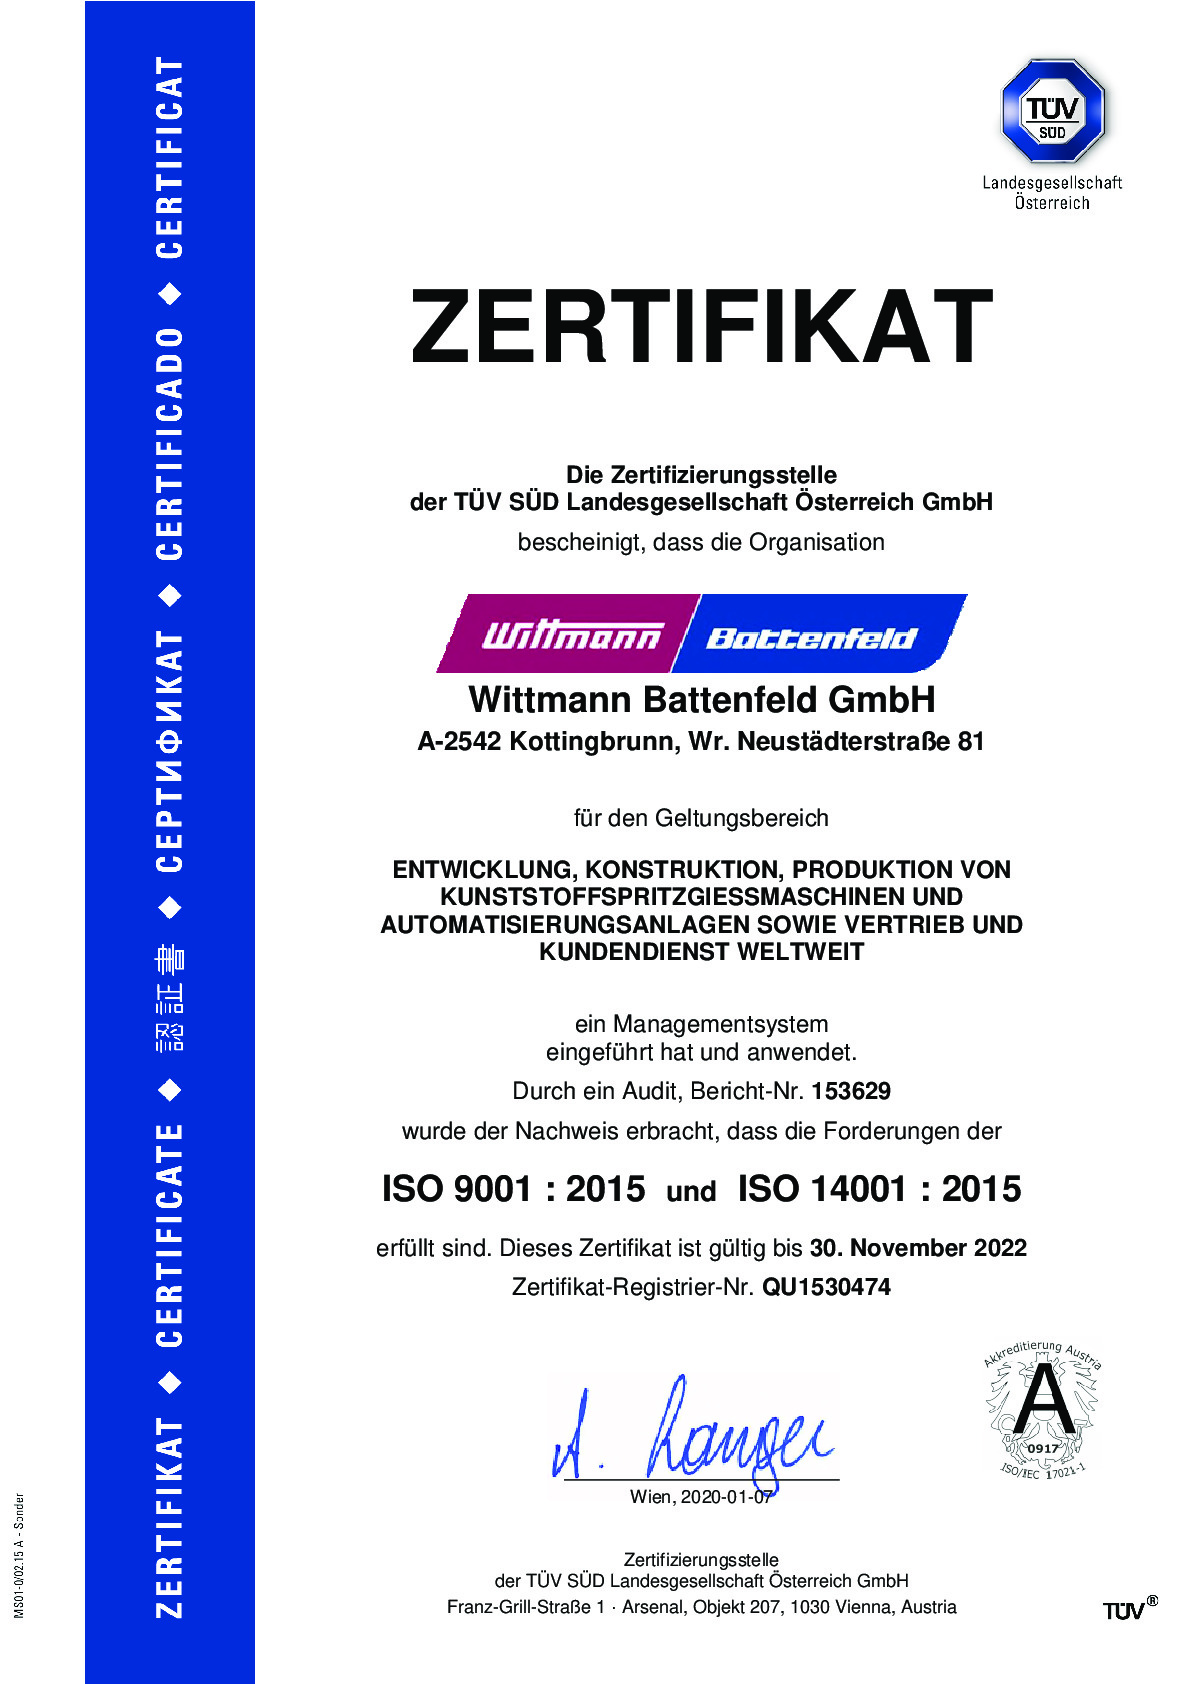 zertifikat-a4_iso_9001-iso_14001-battenfeld_d_0